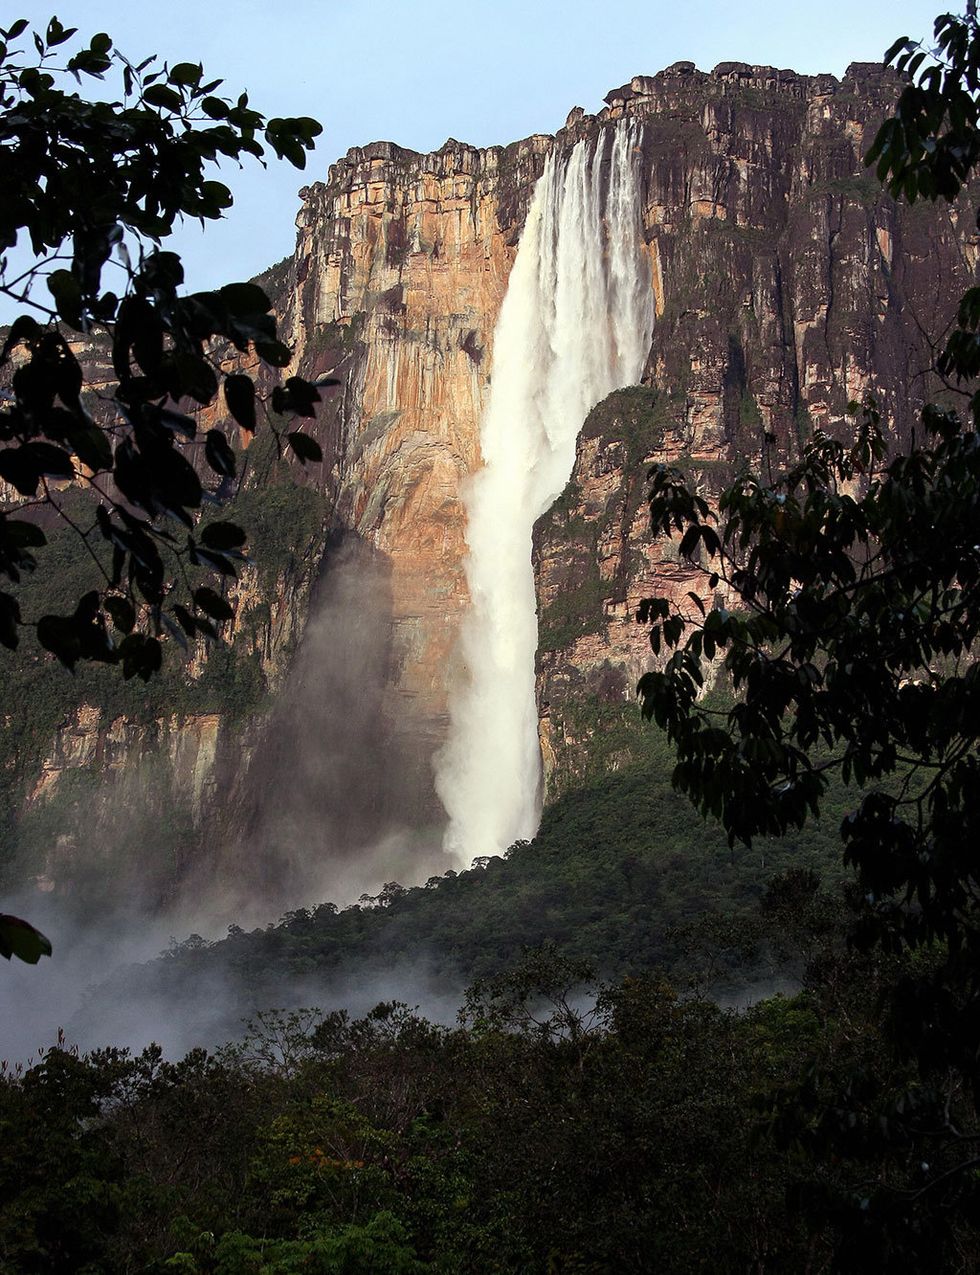 <p>Es la cascada más grande del mundo: comienza a 1.0002 metros de alto, y cae sin interrupción durante 807 metros; es decir, 19 veces más alta que las cataratas del Niágara. Está situada en el Parque Nacional Canaima, en el estado de Bolívar, en la frontera entre Venezuela y Brasil, y fue el paisaje que inspiró a los creativos de Pixar para las Cataratas del Paraíso que vimos en la película 'Up'.</p>